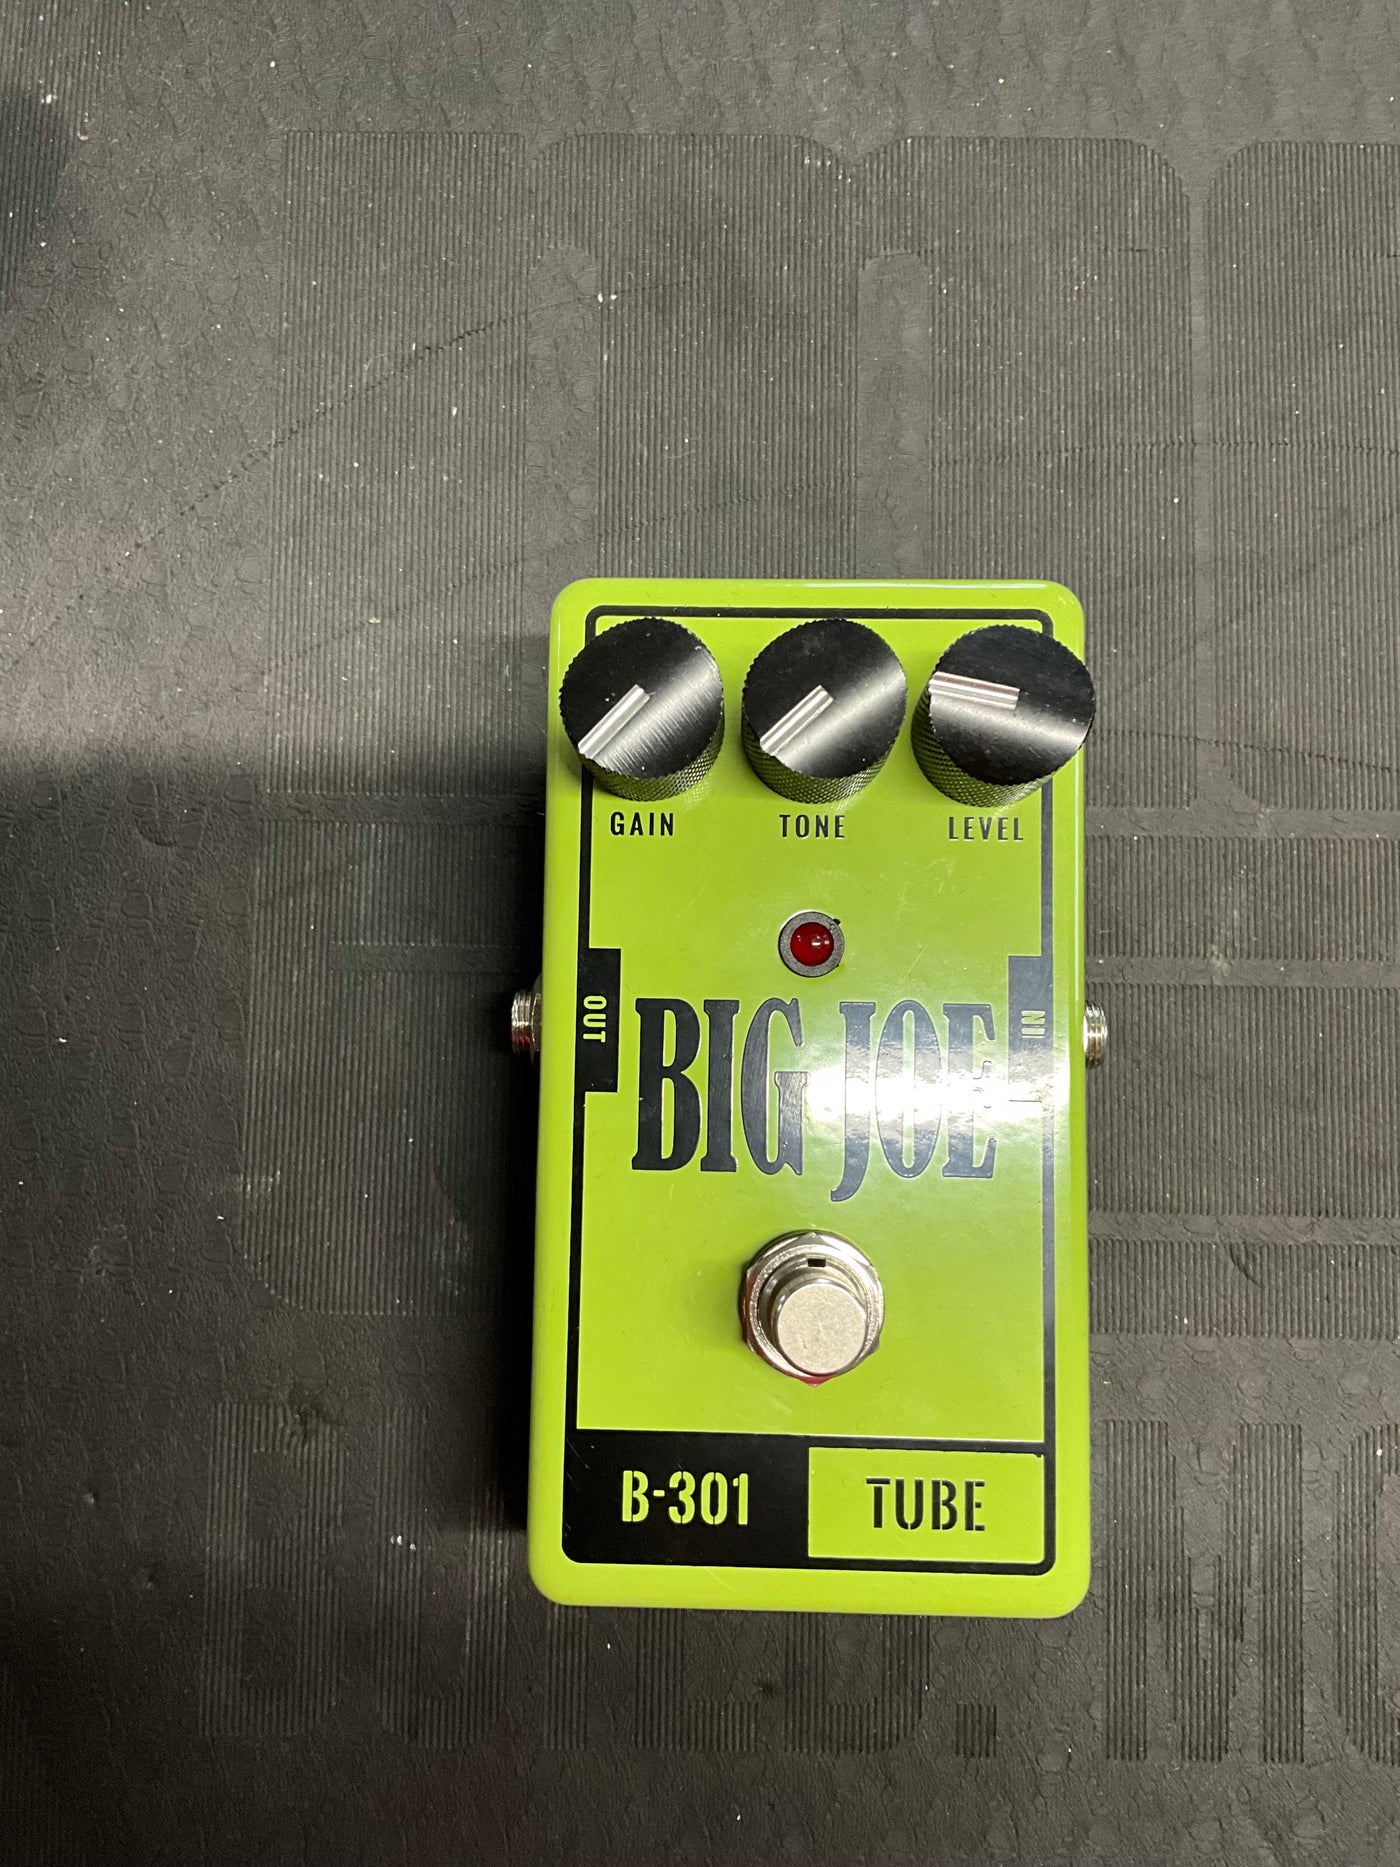 Big Joe Tube B-301